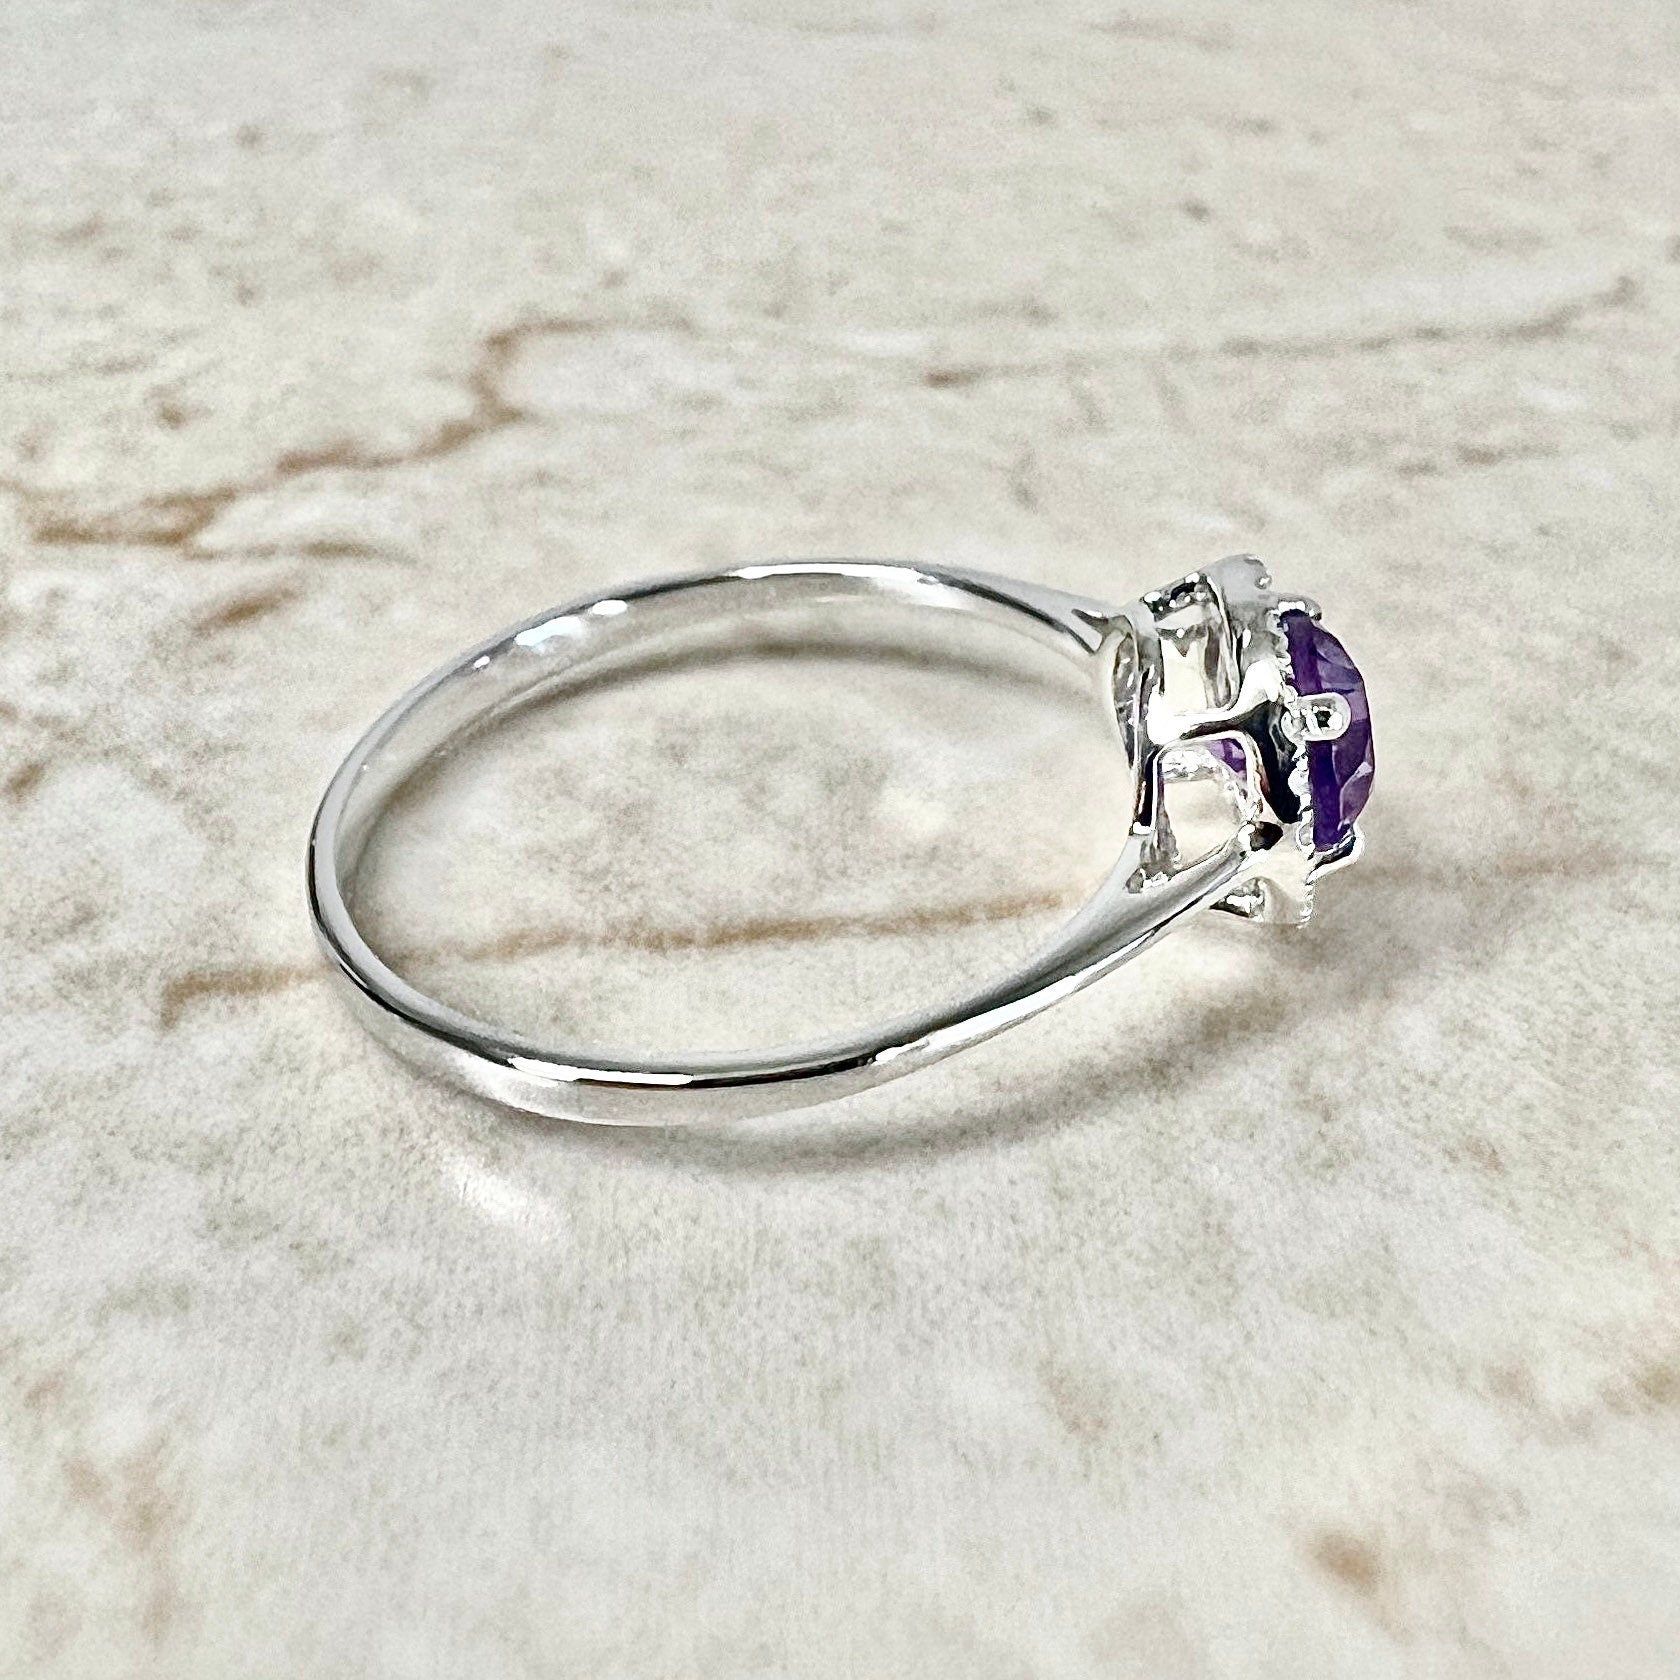 14K Round Amethyst Halo Ring - White Gold Amethyst Ring - Gemstone Halo Ring - Amethyst Promise Ring - February Birthstone - Birthday Gift